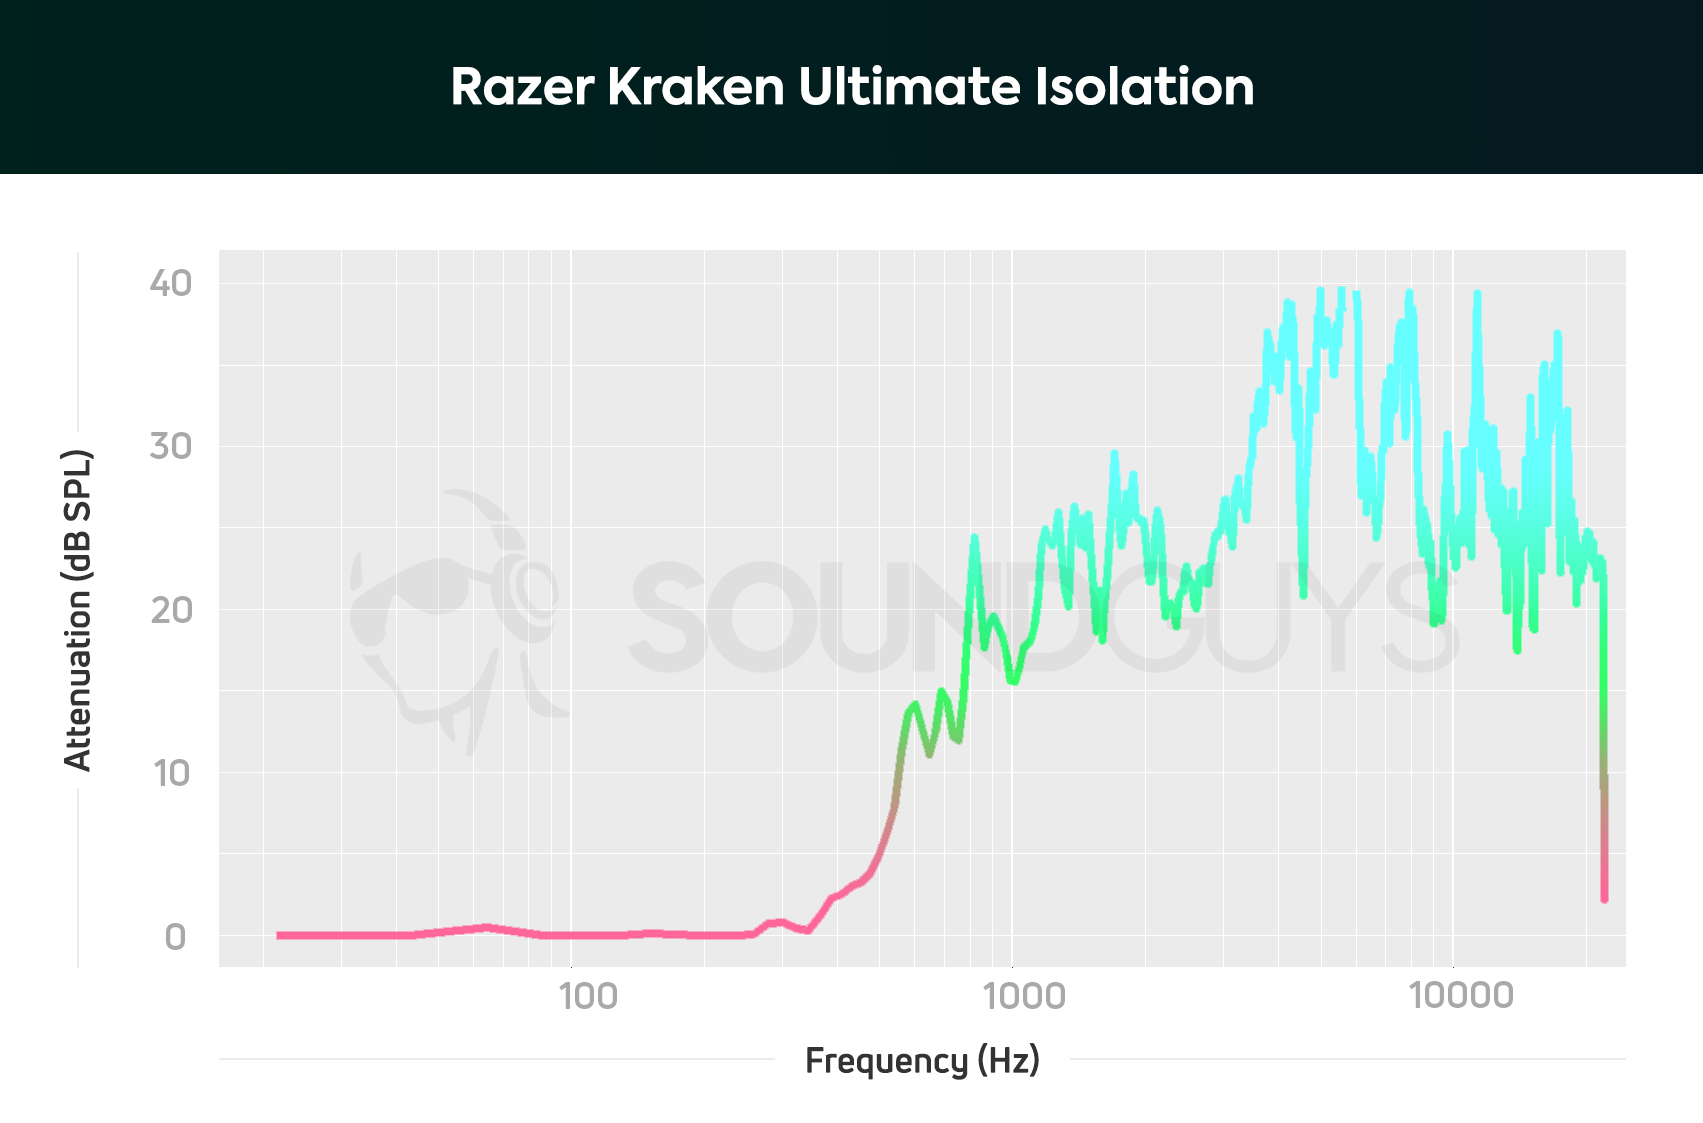 An isolation chart for the Razer Kraken Ultimate